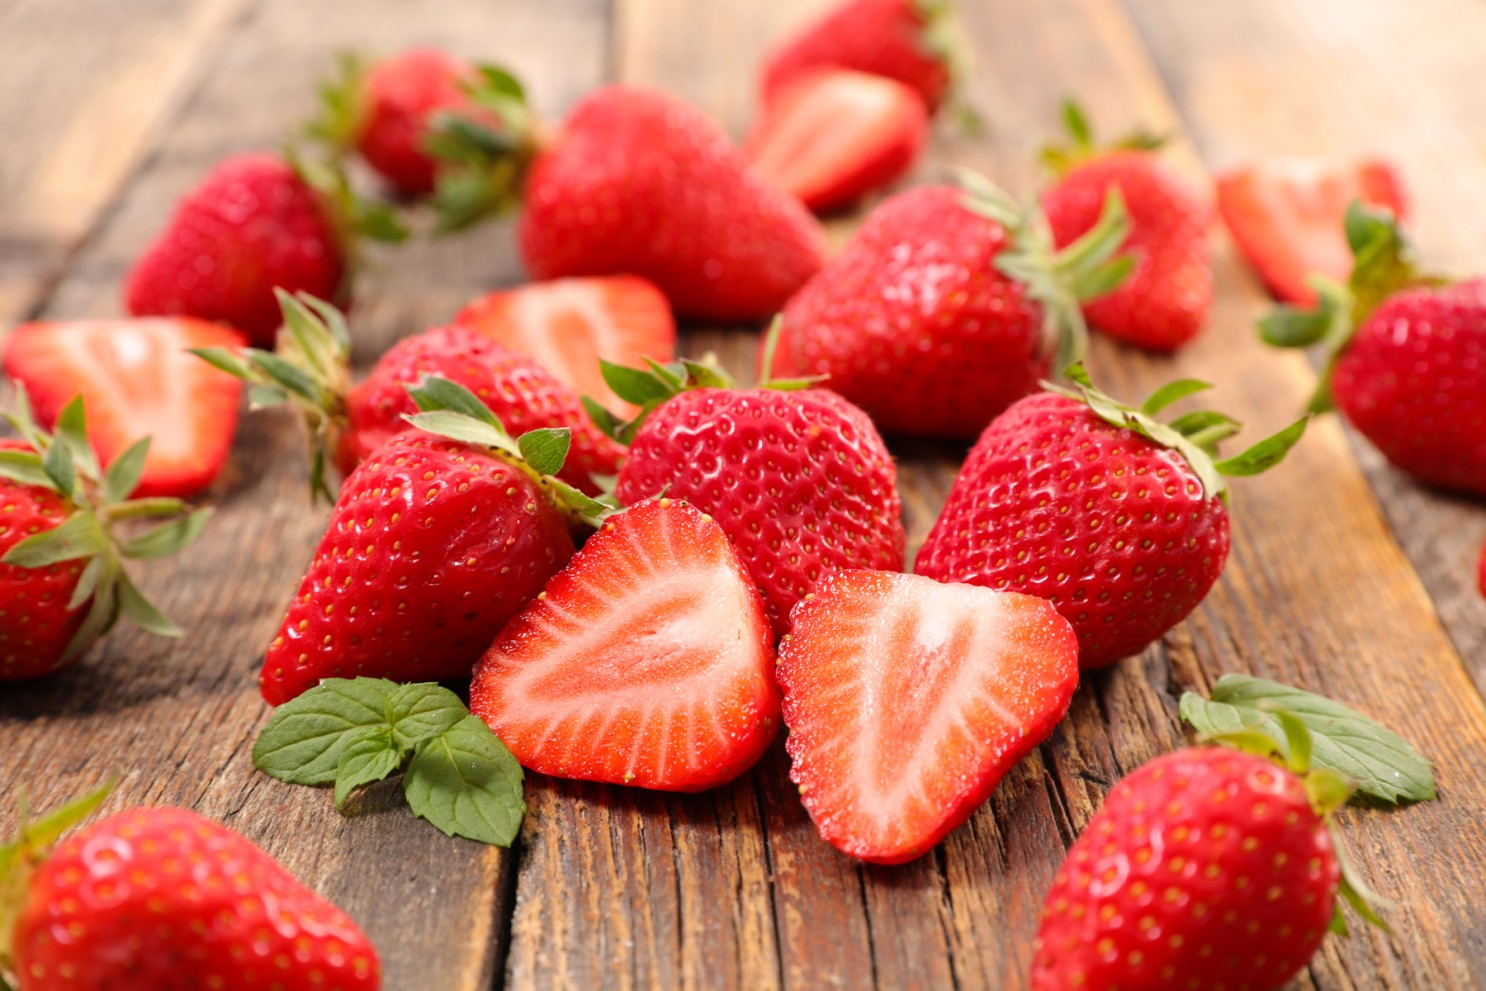 Are Strawberries Acidic? (Quick Facts) - The Trellis